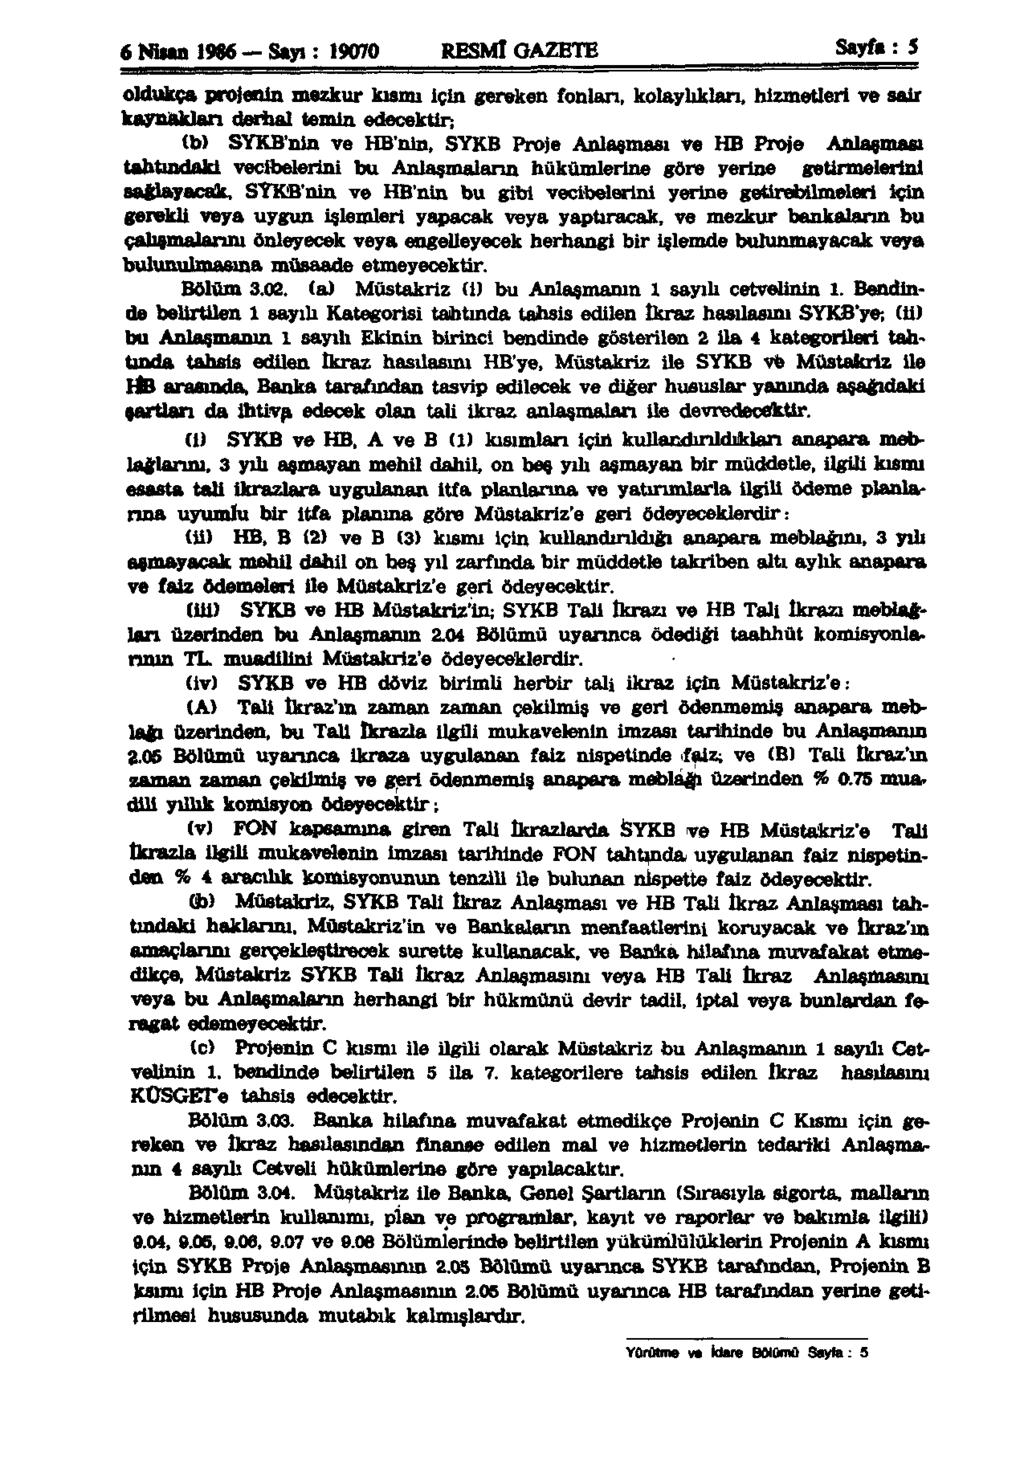 6 Nisan 1986 -Sayı: 19070 RESMİ GAZETE Sayfa: 5 oldukça projenin mezkur kısmı için gereken fonları, kolaylıkları, hizmetleri ve sair kaynakları derhal temin edecektir; (b) SYKB'nin ve HB'nin, SYKB